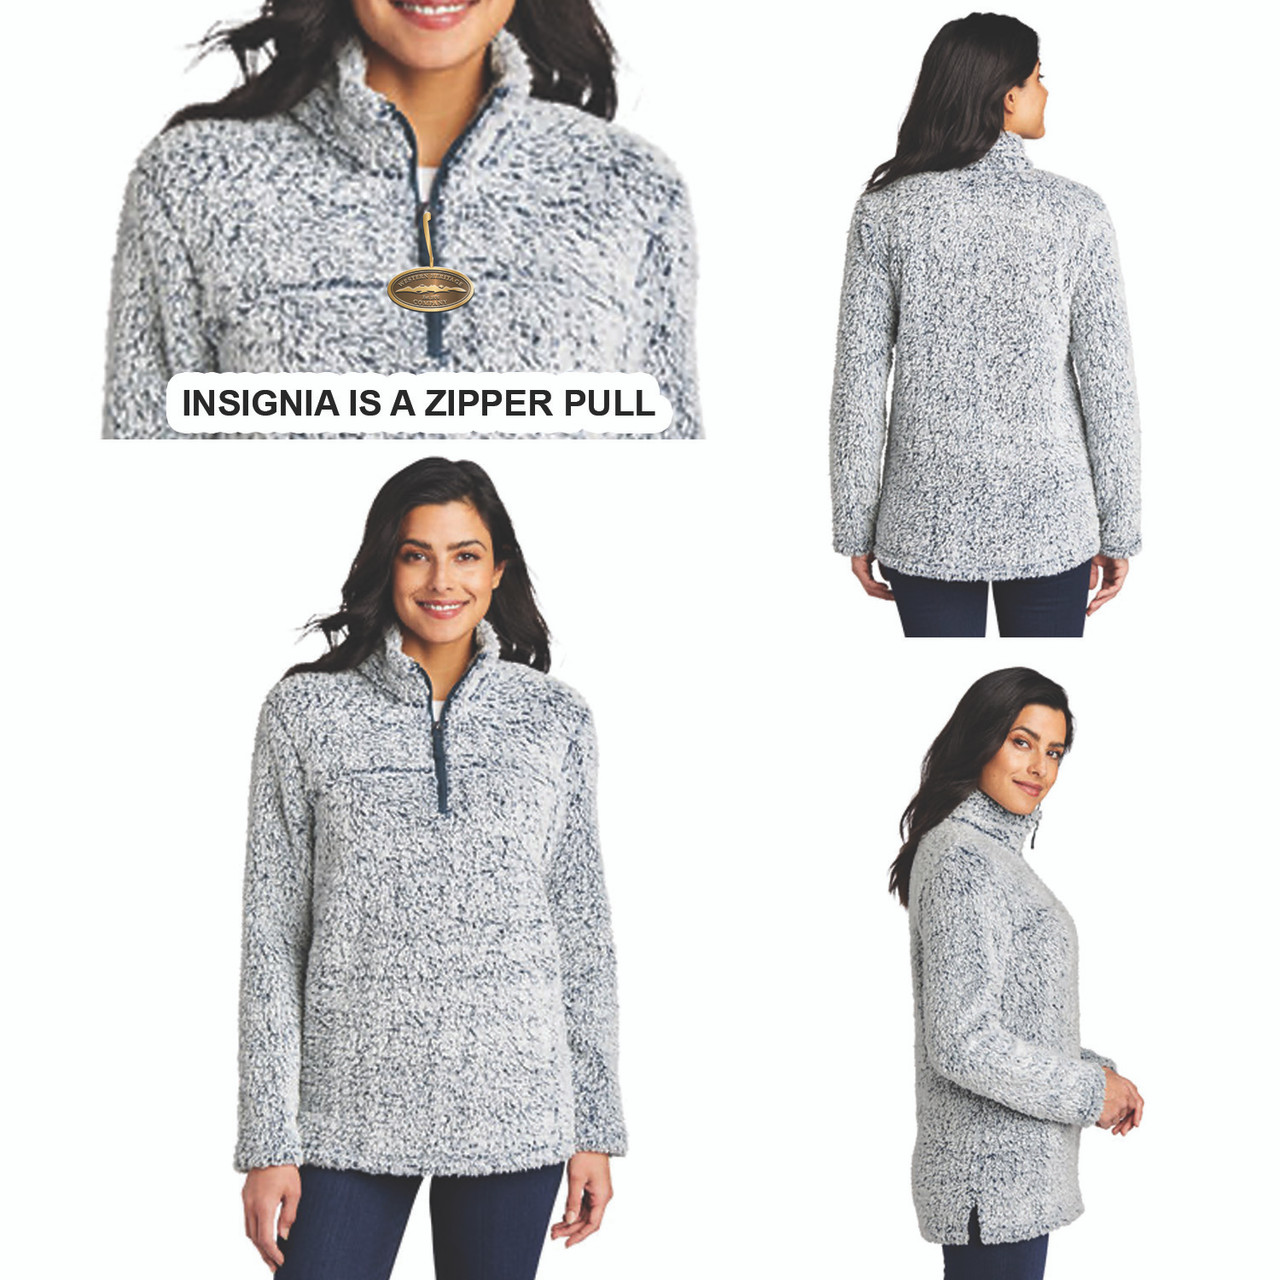 Port Authority® Women's Sweater Fleece Jacket